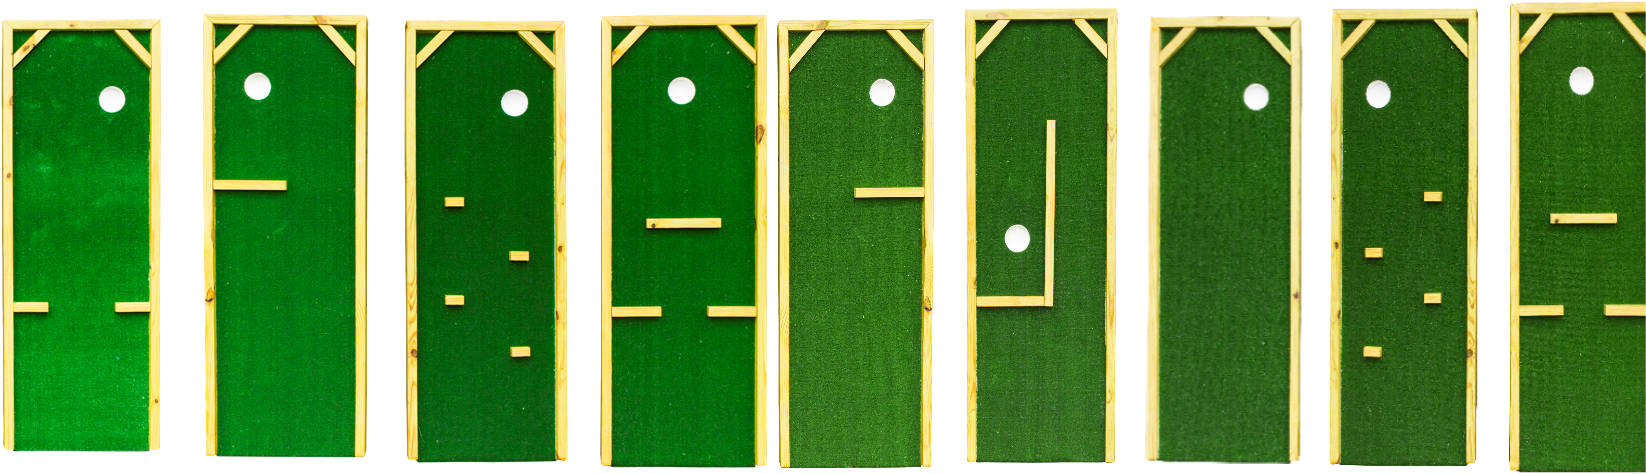 Putt Putt, Golf, Miniature Golf, Polo Neck - Miniature Golf Clipart (1700x506), Png Download